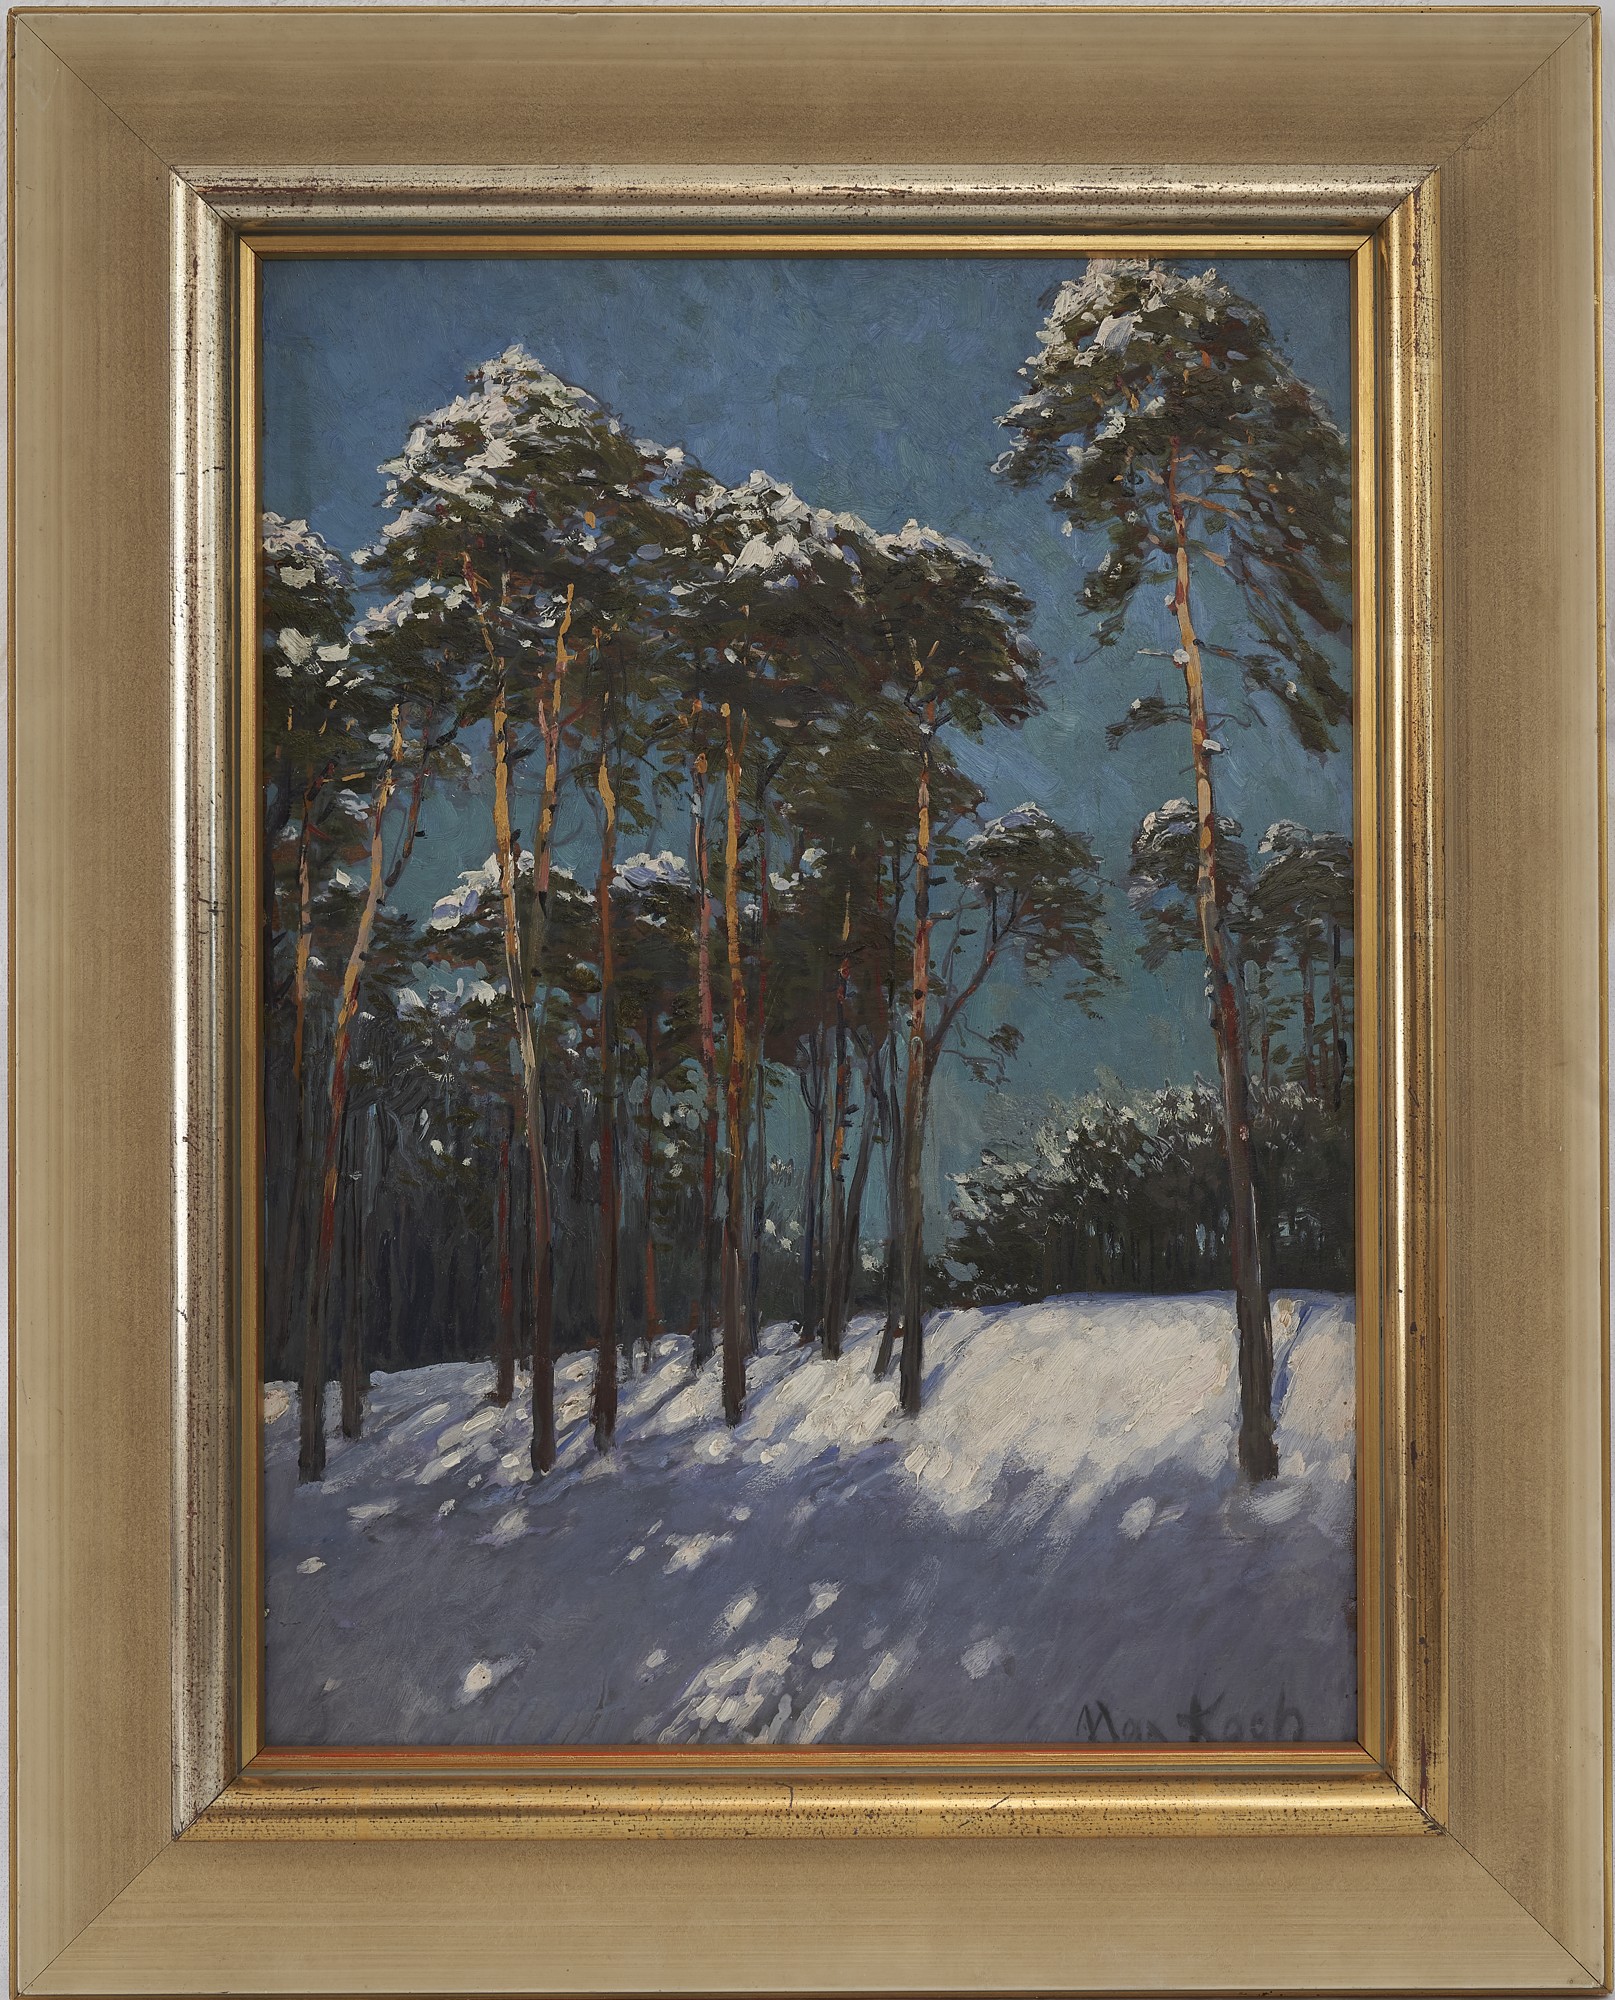 Ölgemälde "Märkische Kiefern im Schnee" von Max Koch (Museum der Havelländischen Malerkolonie CC BY-NC-SA)